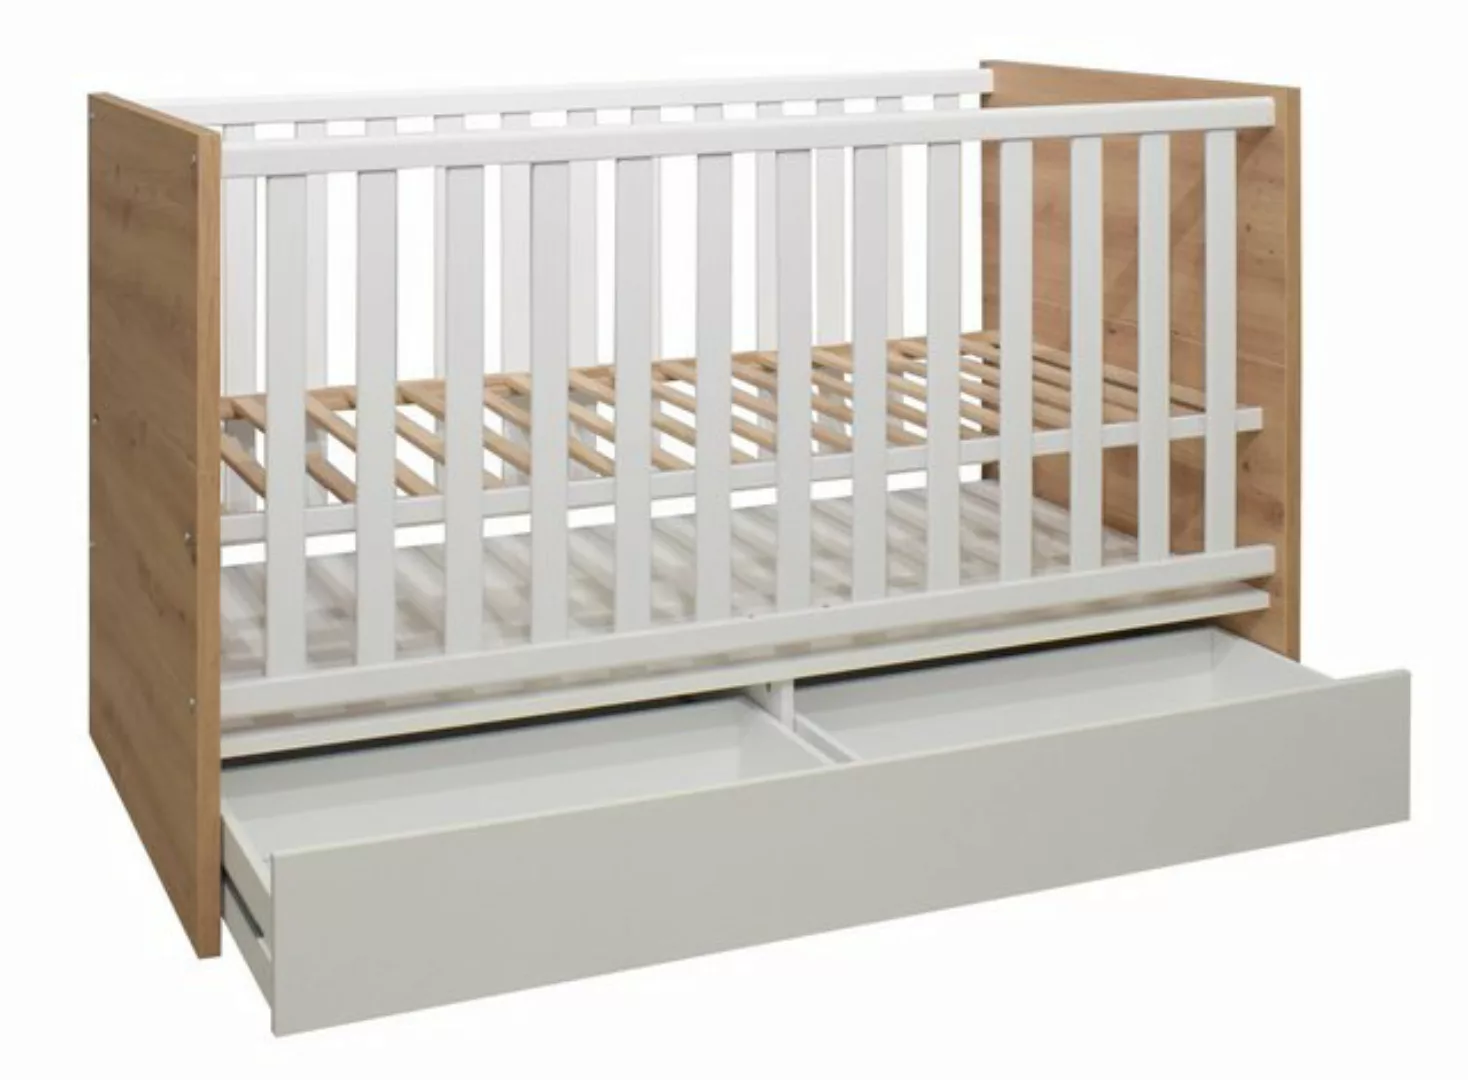 Mäusbacher Kinderbett in asteiche / weiß matt lack (BxHxT: 78x91x144 cm) günstig online kaufen